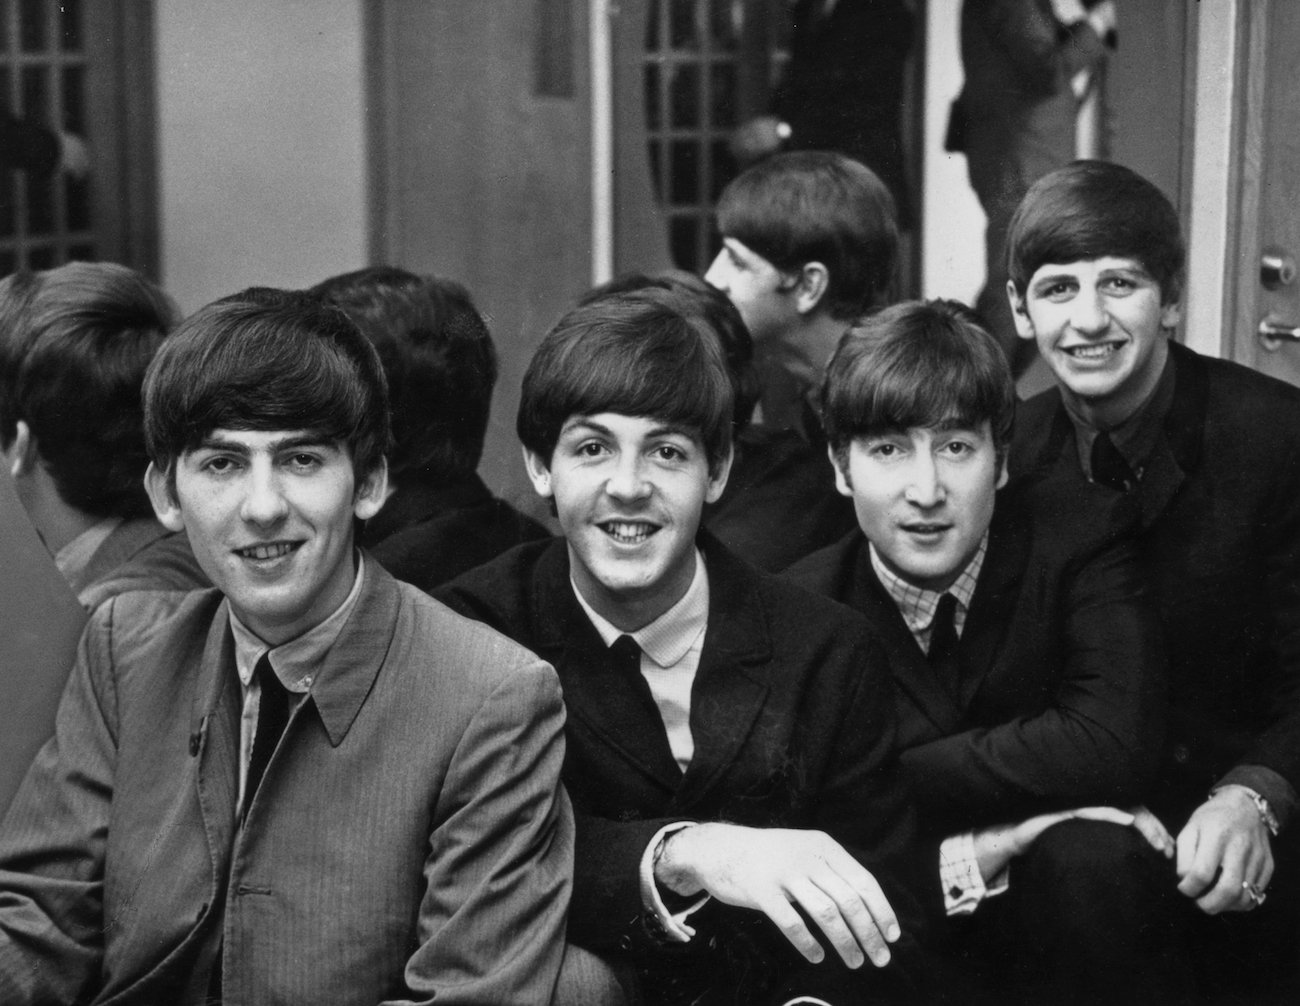 The Beatles dressed in dark suits in Sweden, 1963. 